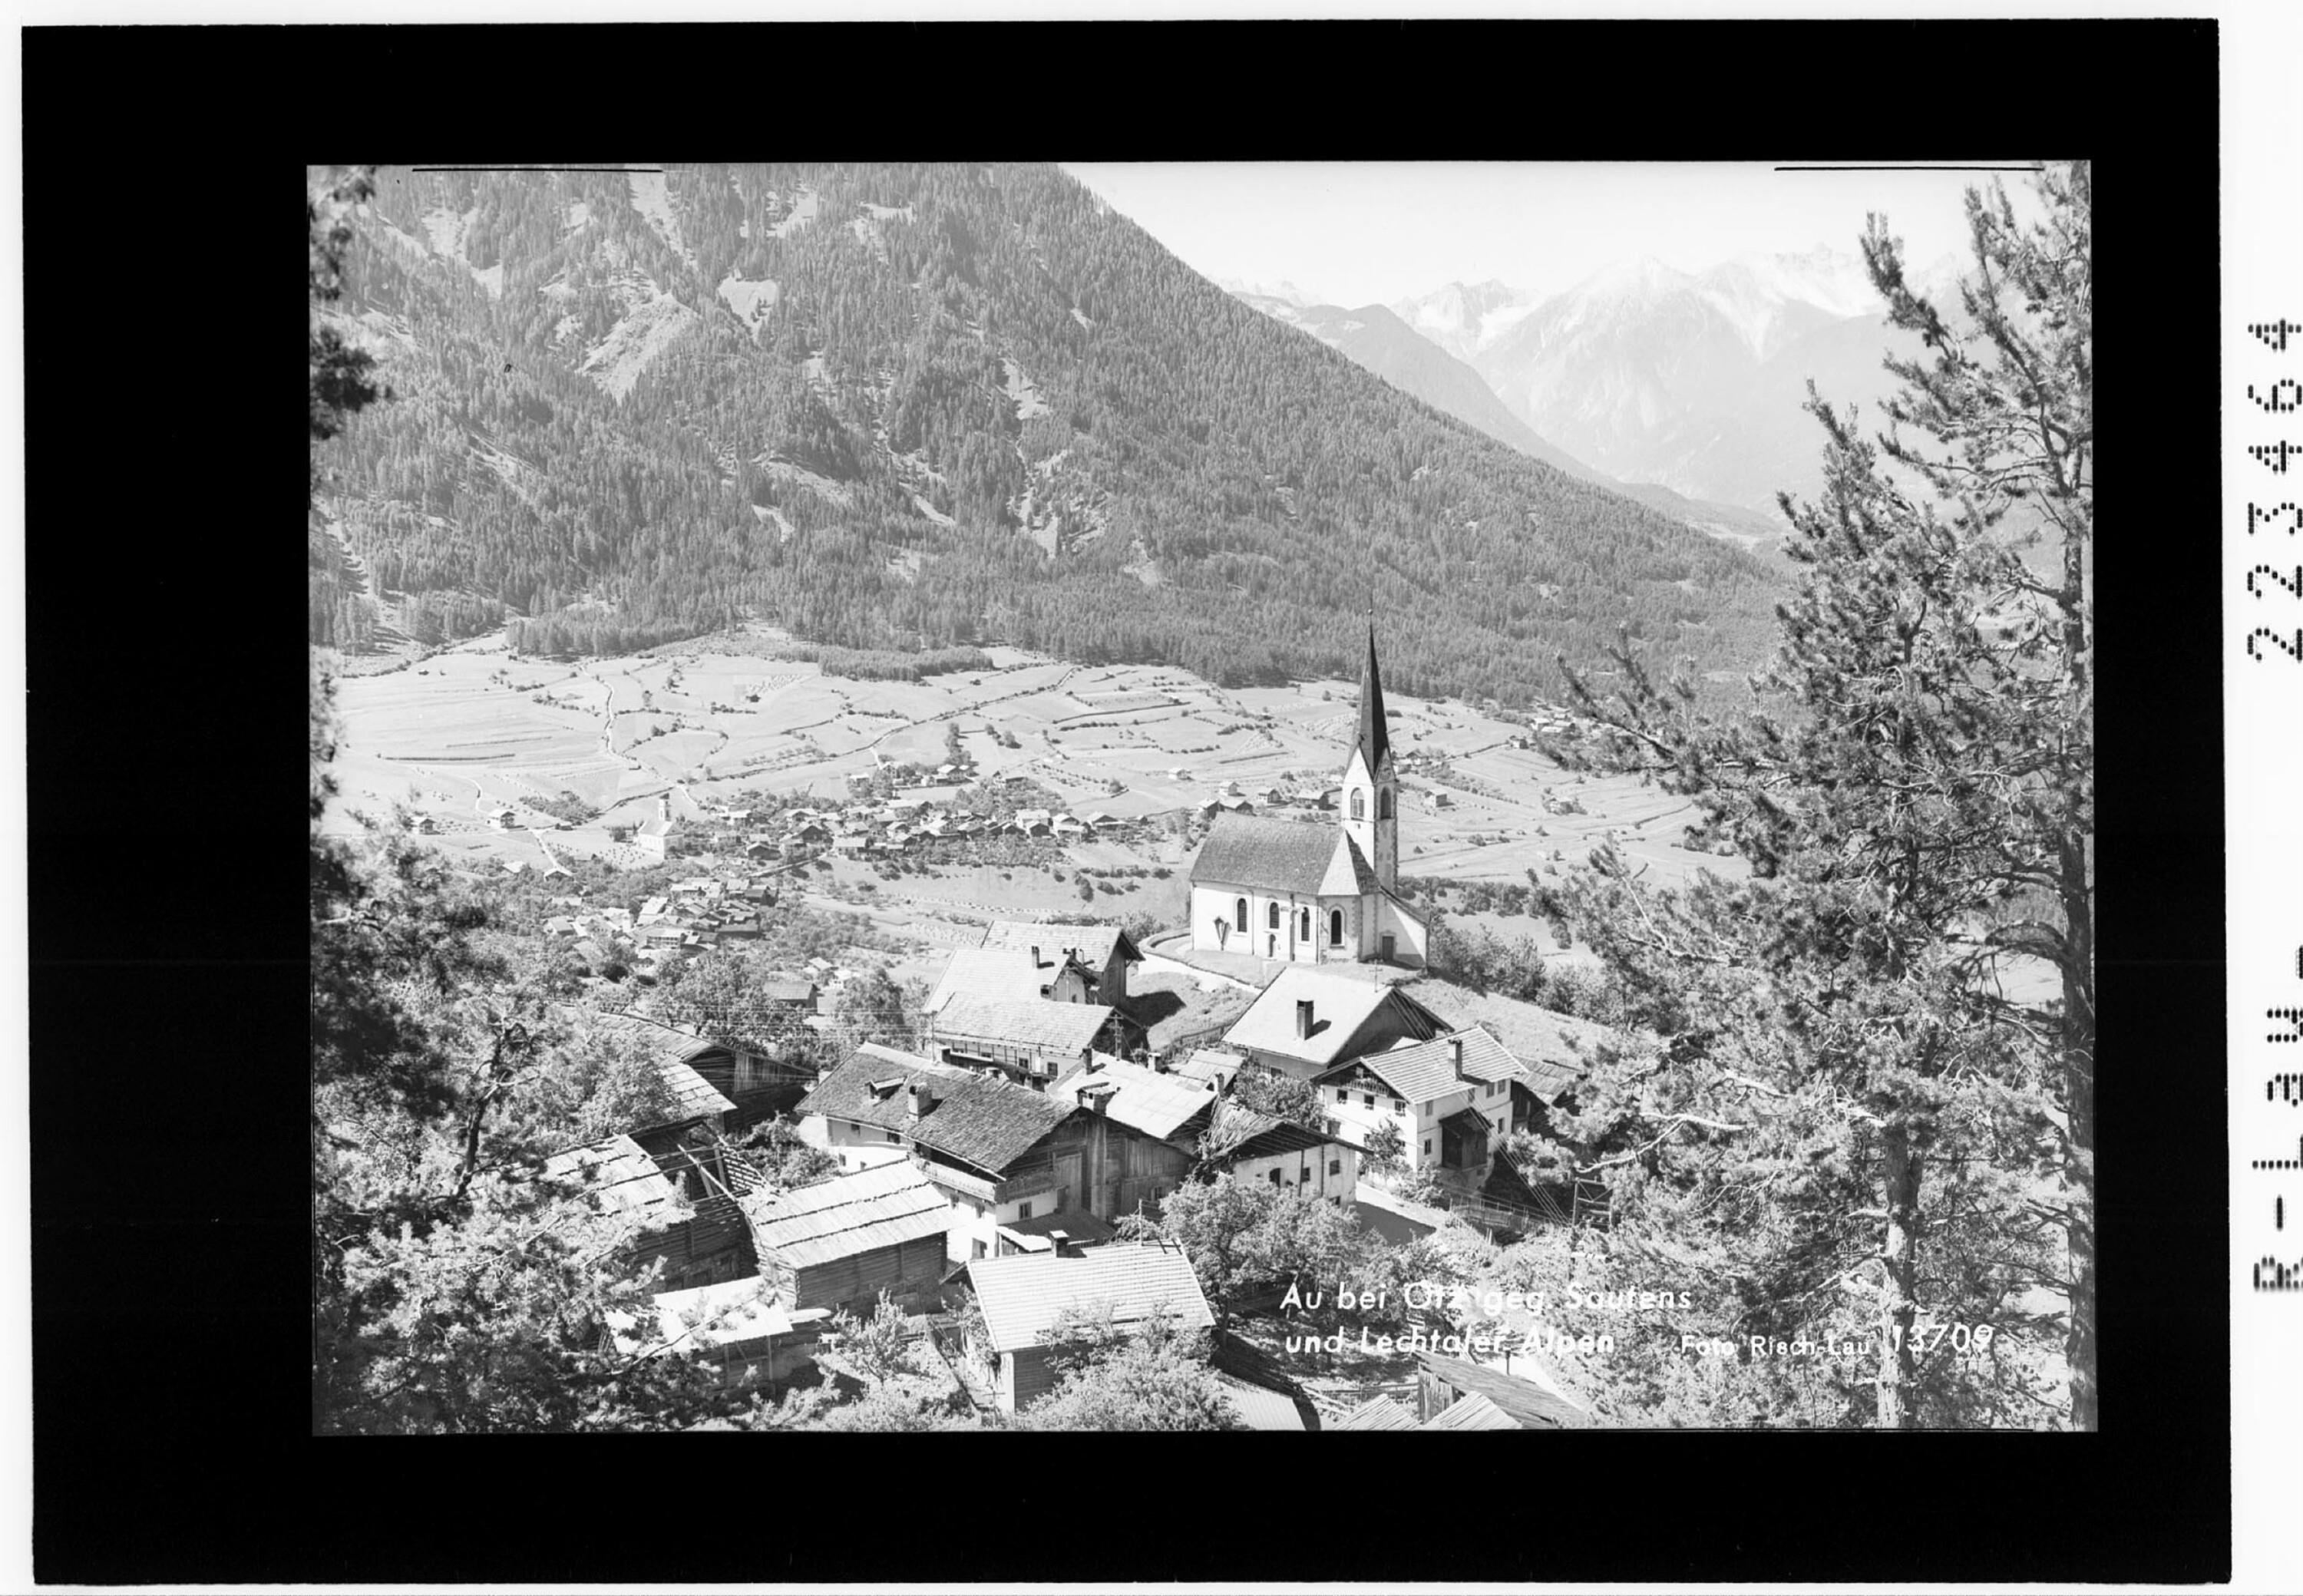 Au bei Ötz in Tirol gegen Sautens und Lechtaler Alpen></div>


    <hr>
    <div class=